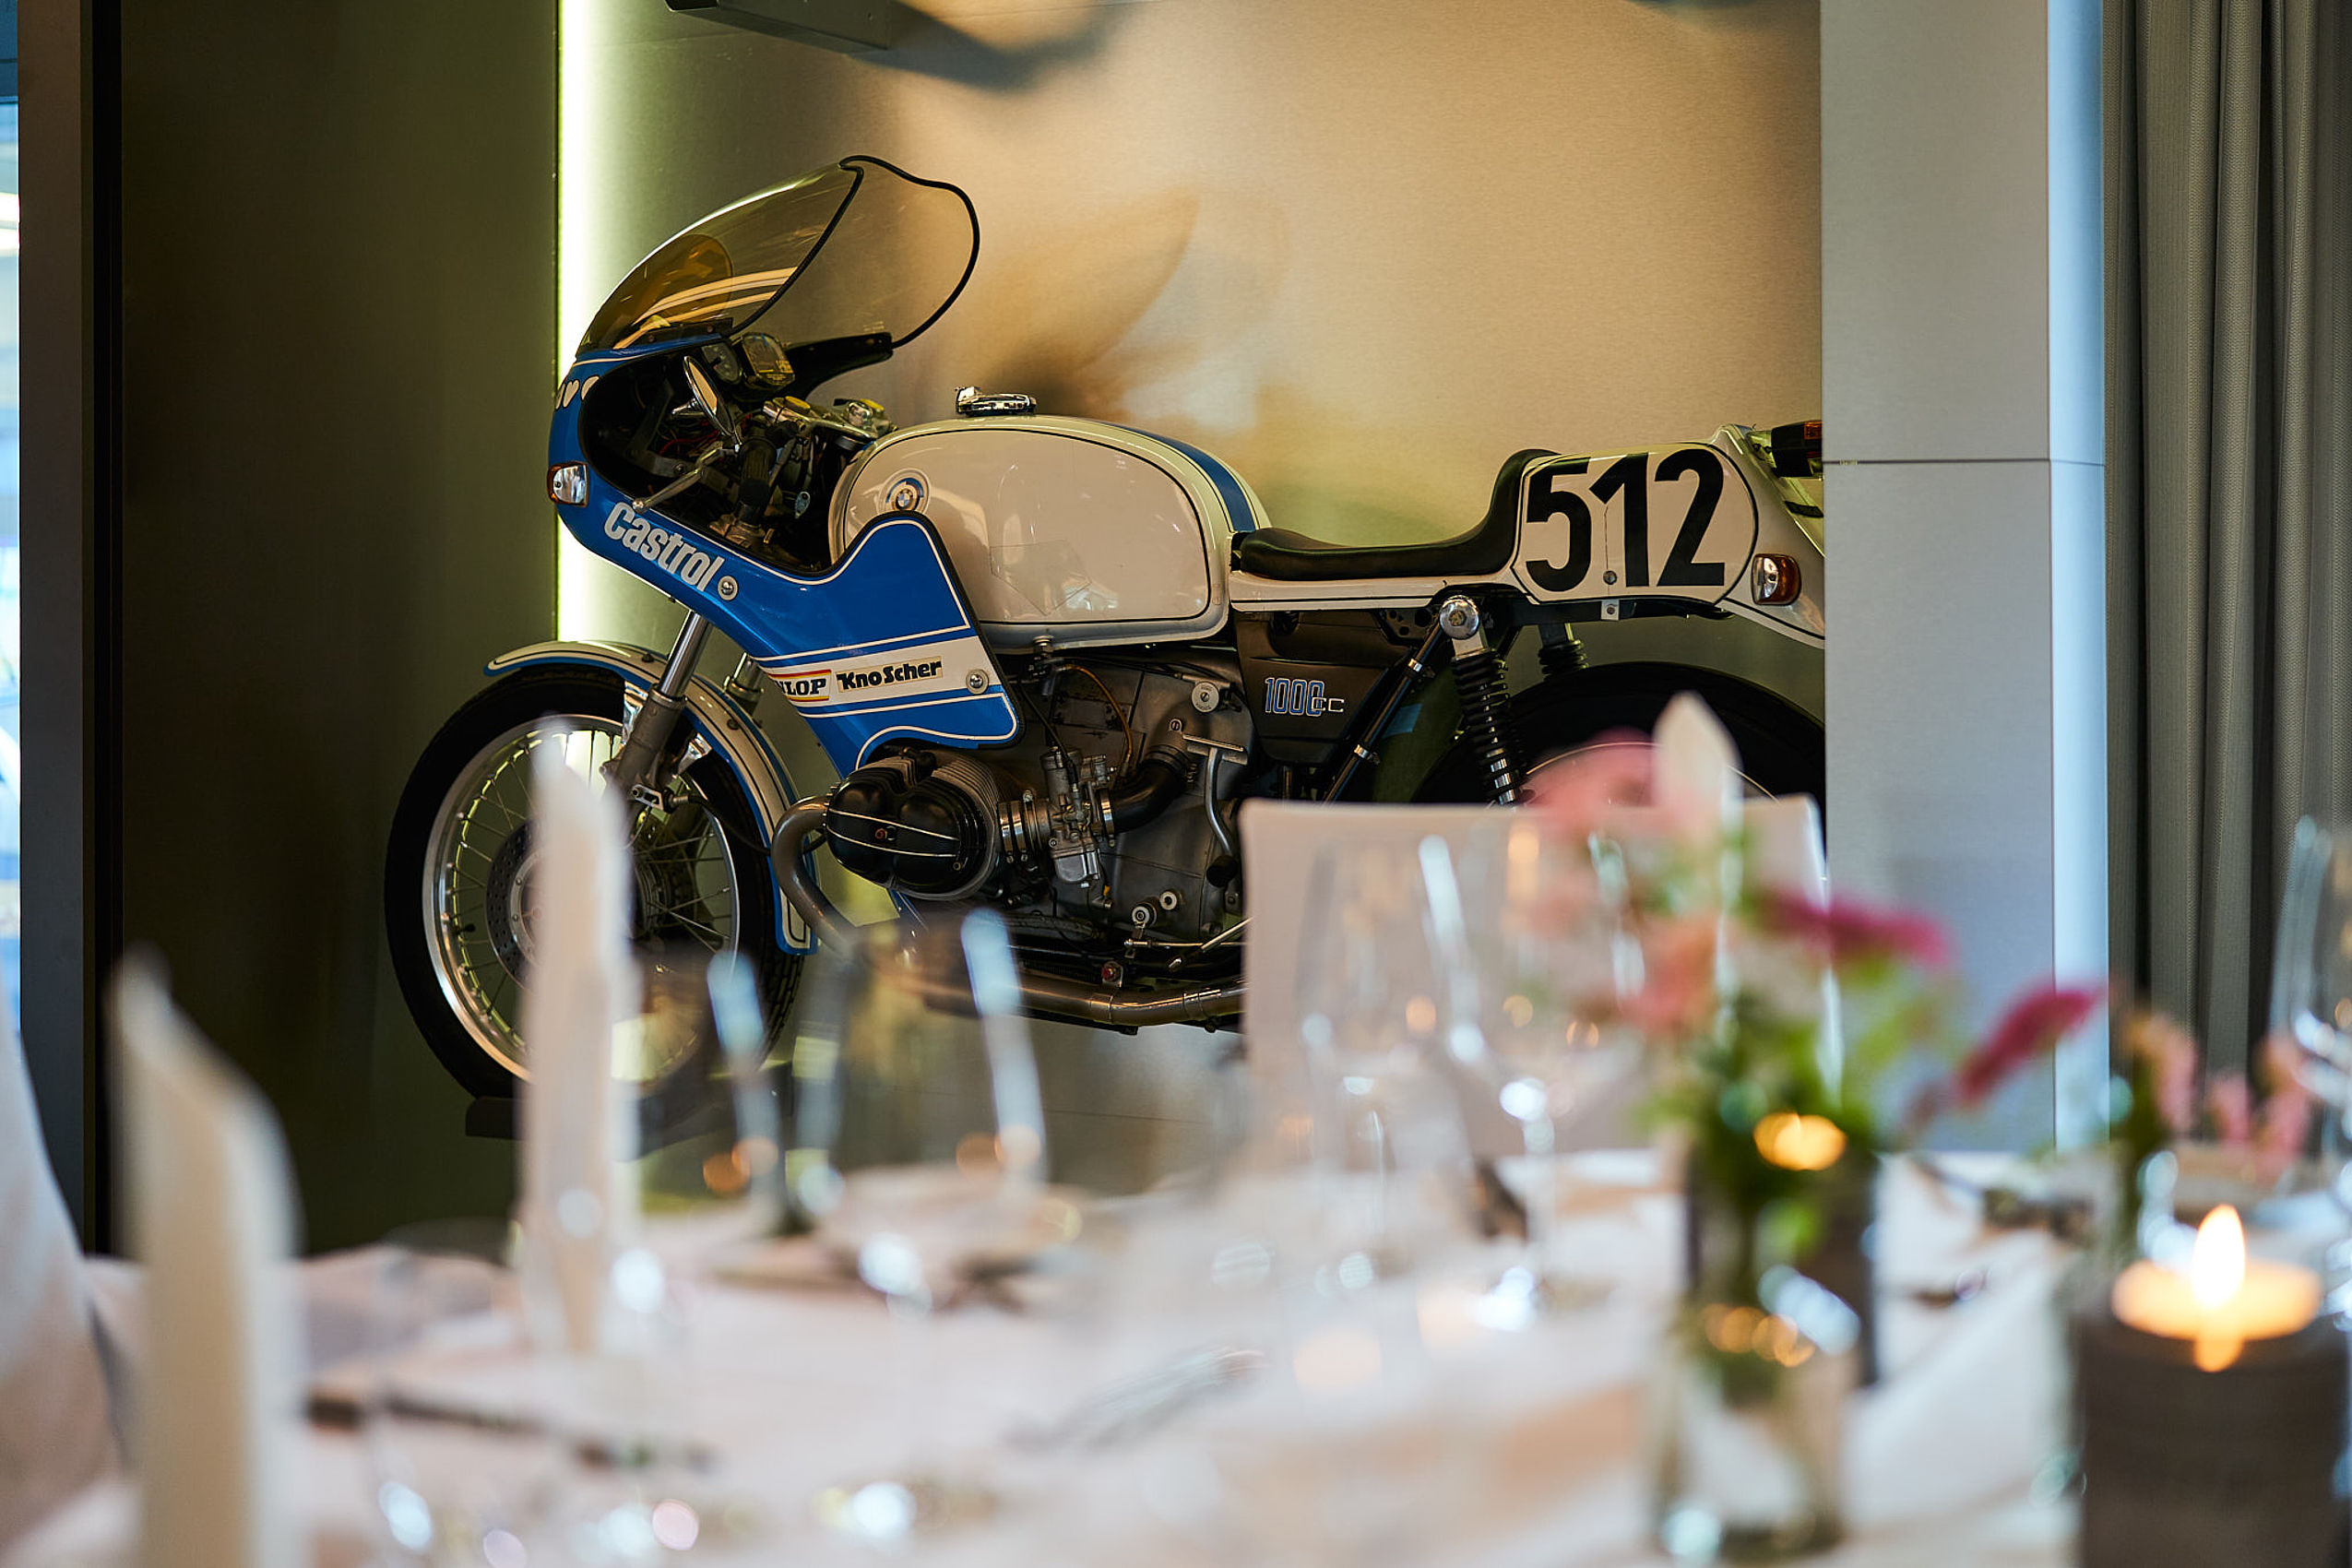 Fokusaufnahme auf ein blaues Motorrad mit der Nummer 512 und der eingedeckte Tisch im Vordergrund ist unscharf